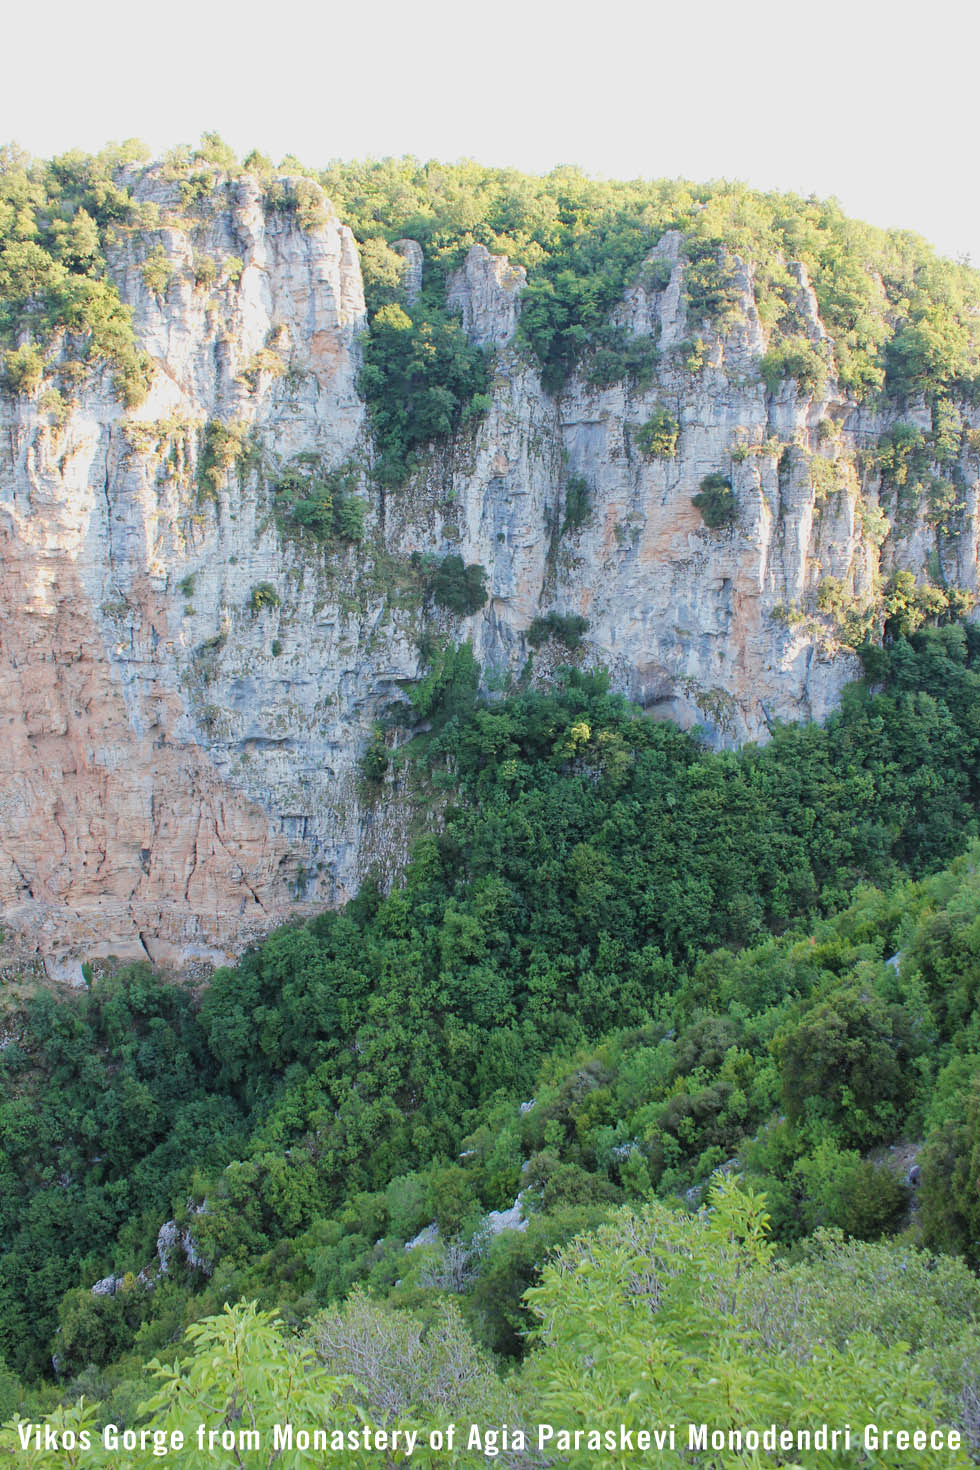 Vikos Gorge view from Monastery Agia Perakevi